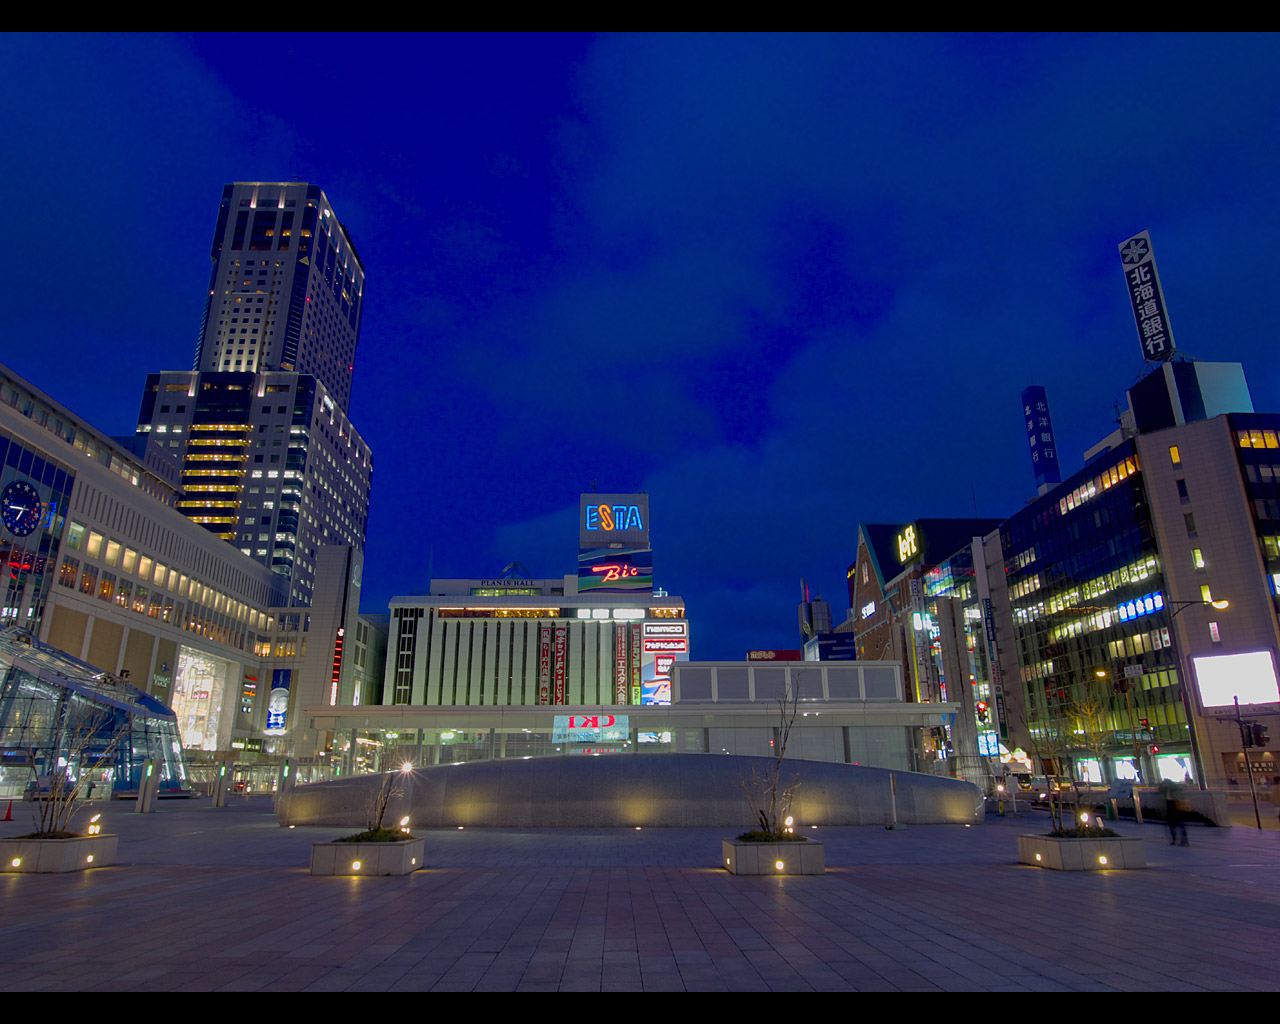 札幌駅jrタワーの夜景壁紙写真 3 1280 1024